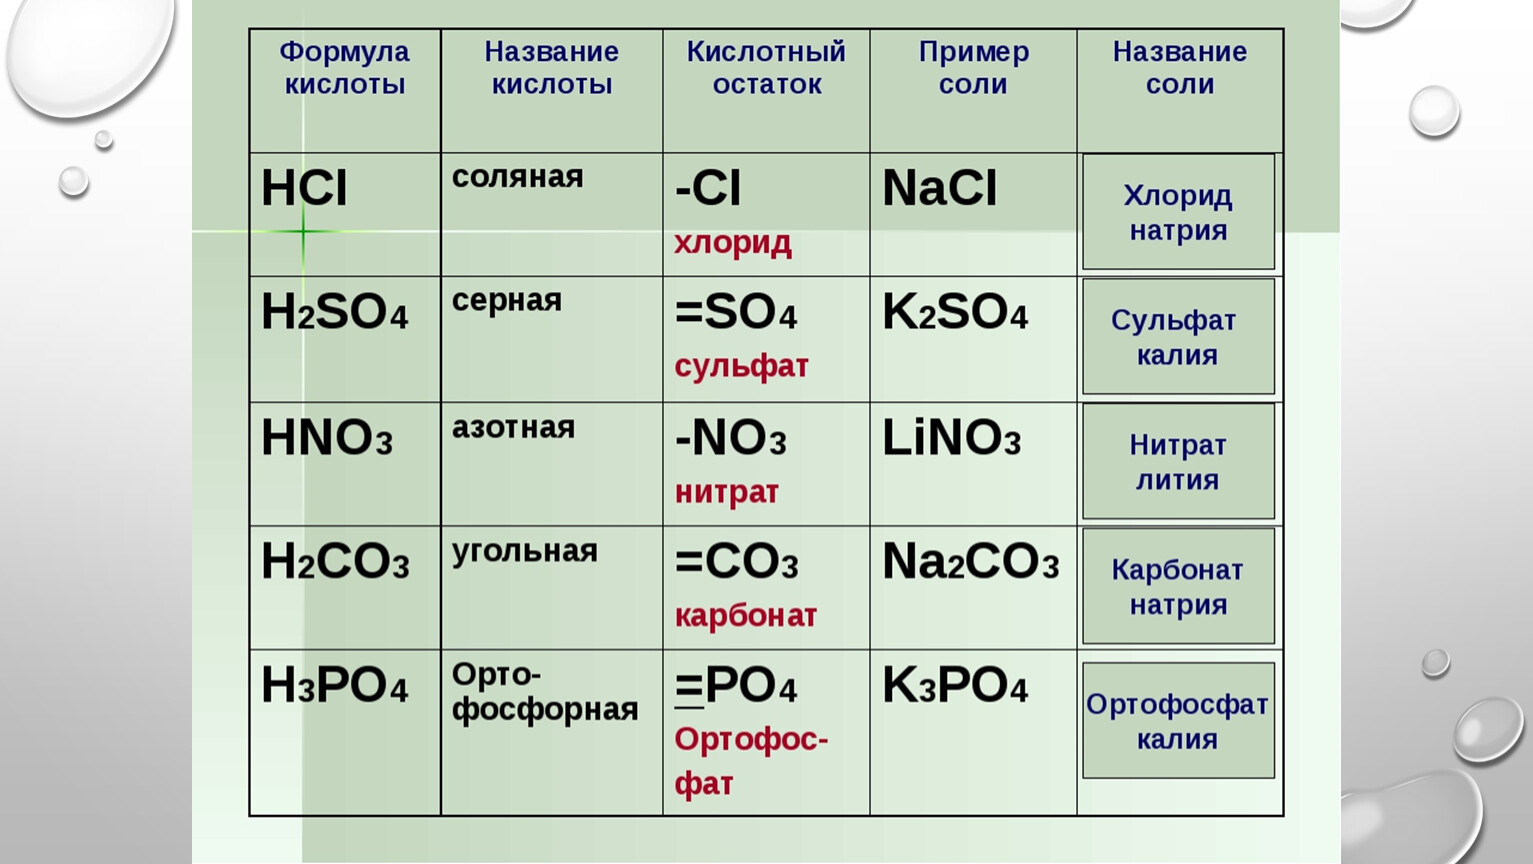 Формула нитрата кальция в химии